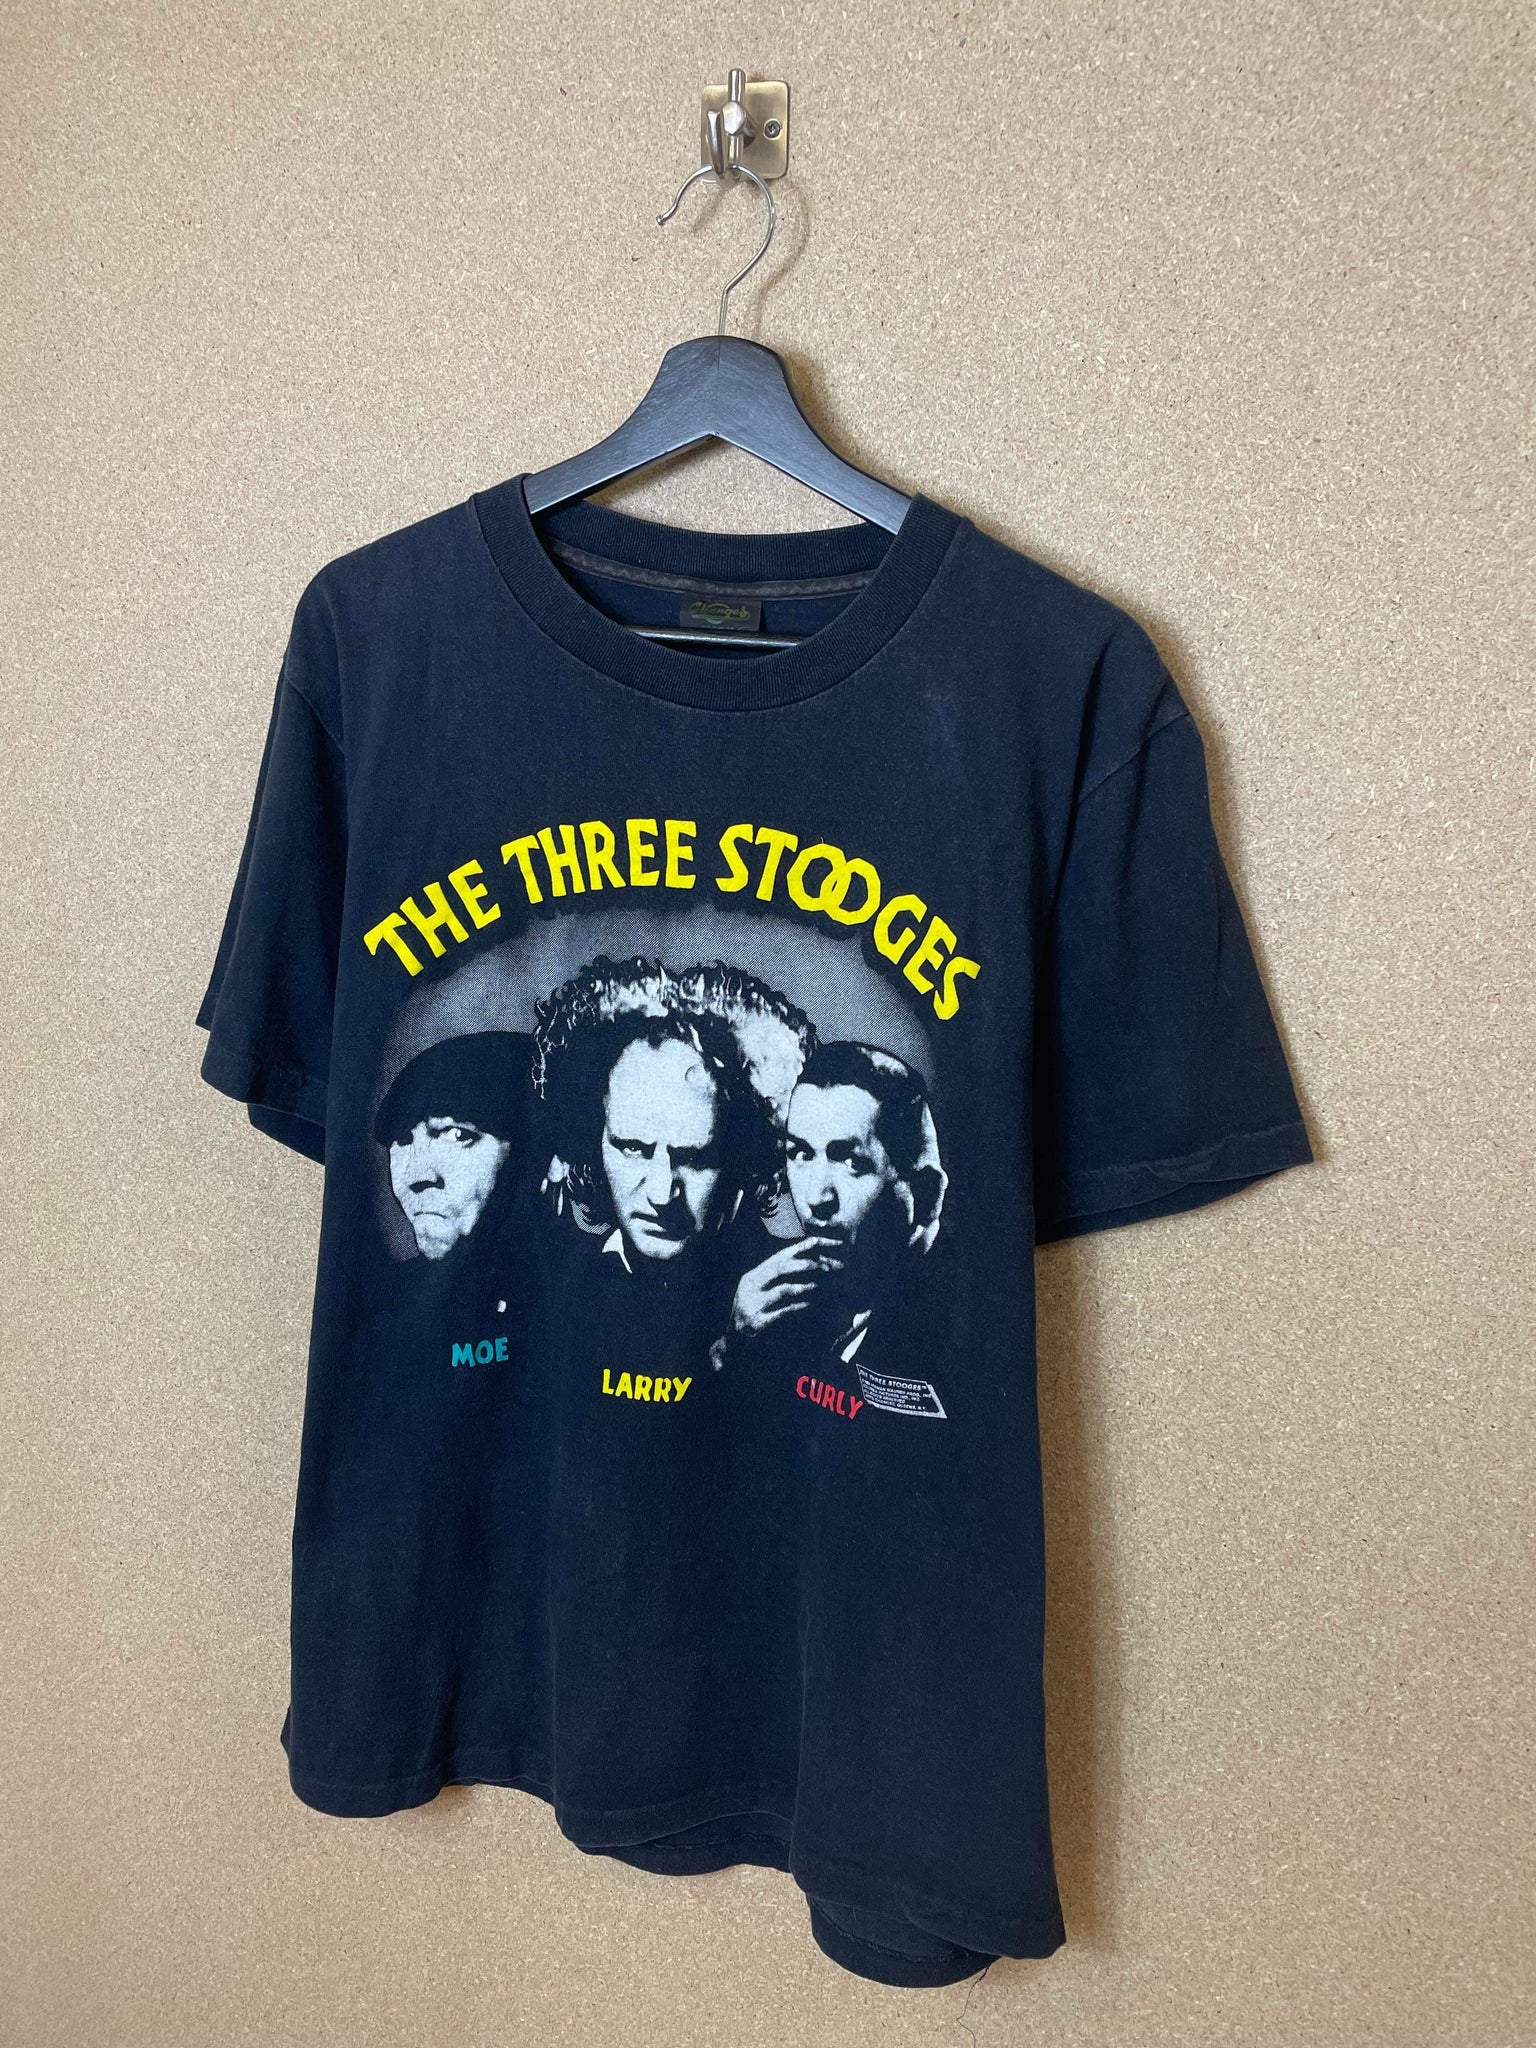 Vintage The Three Stooges 1988 Tee - M